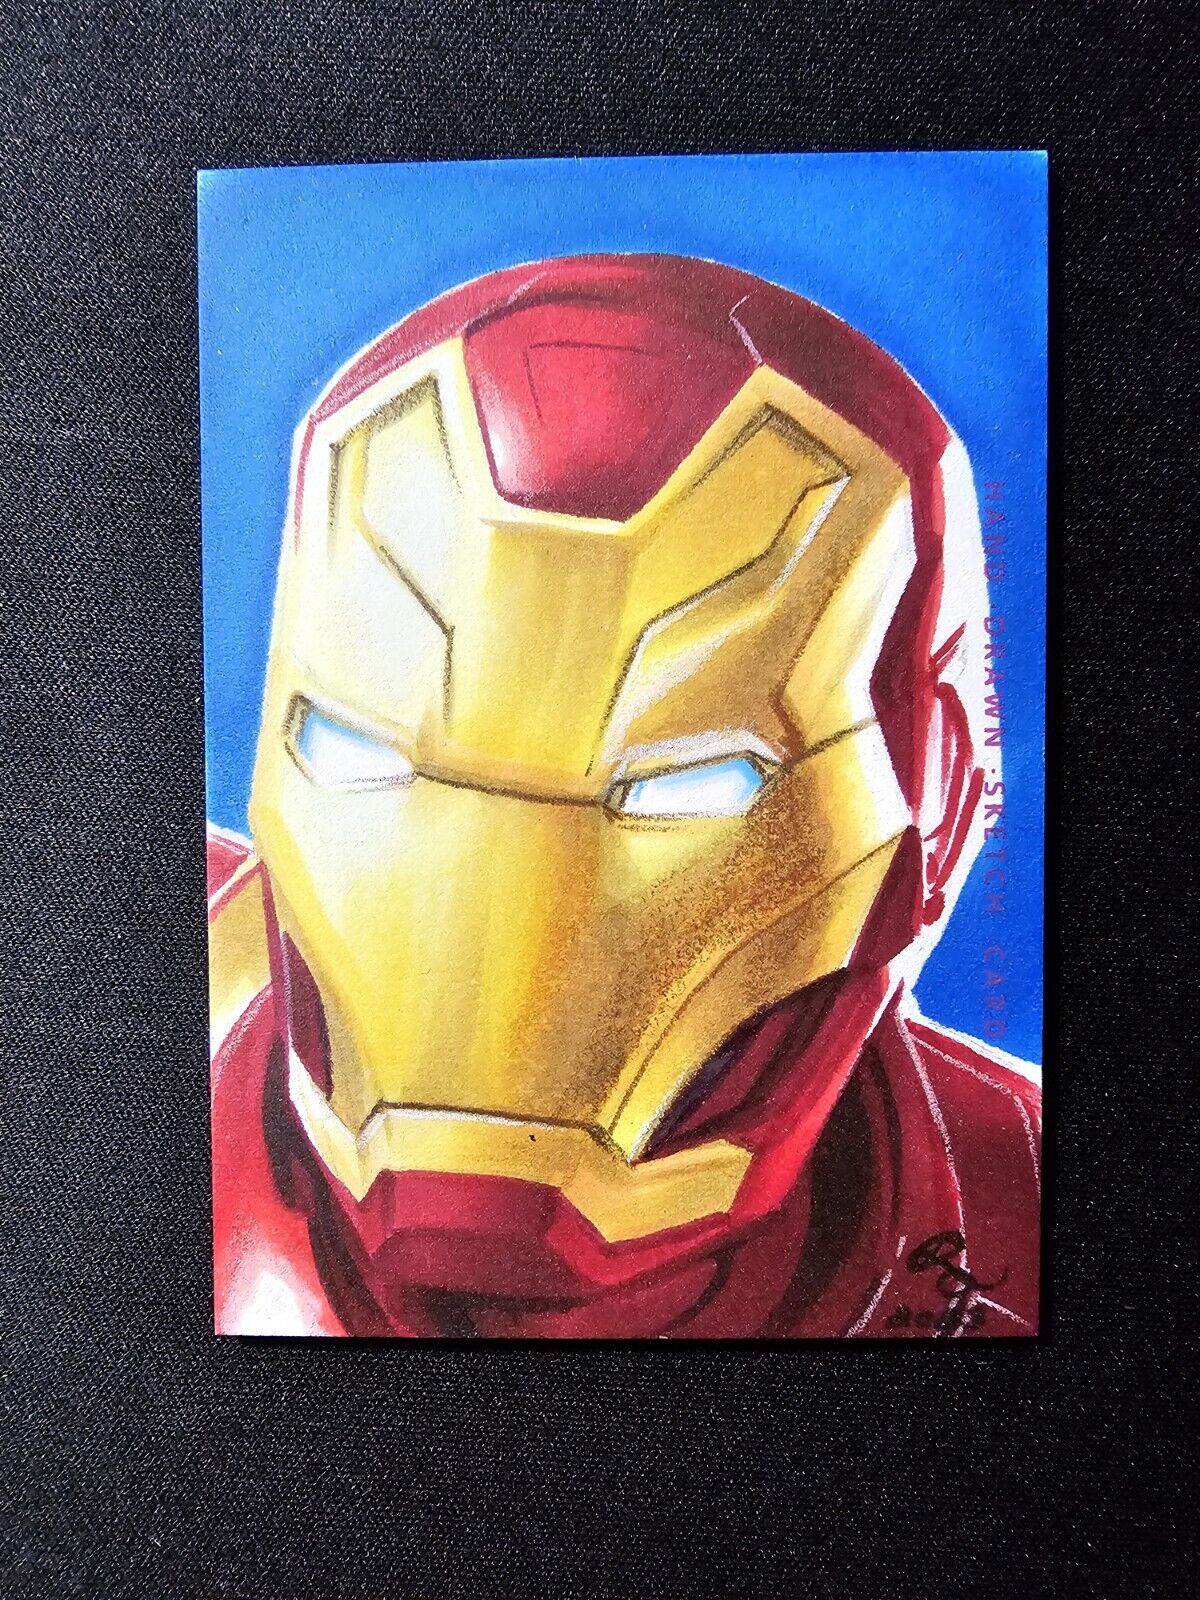 Marvel Iron Man Sketch Card By Rhiannon Owens 1/1 Finding Unicorn Infinity SAGA